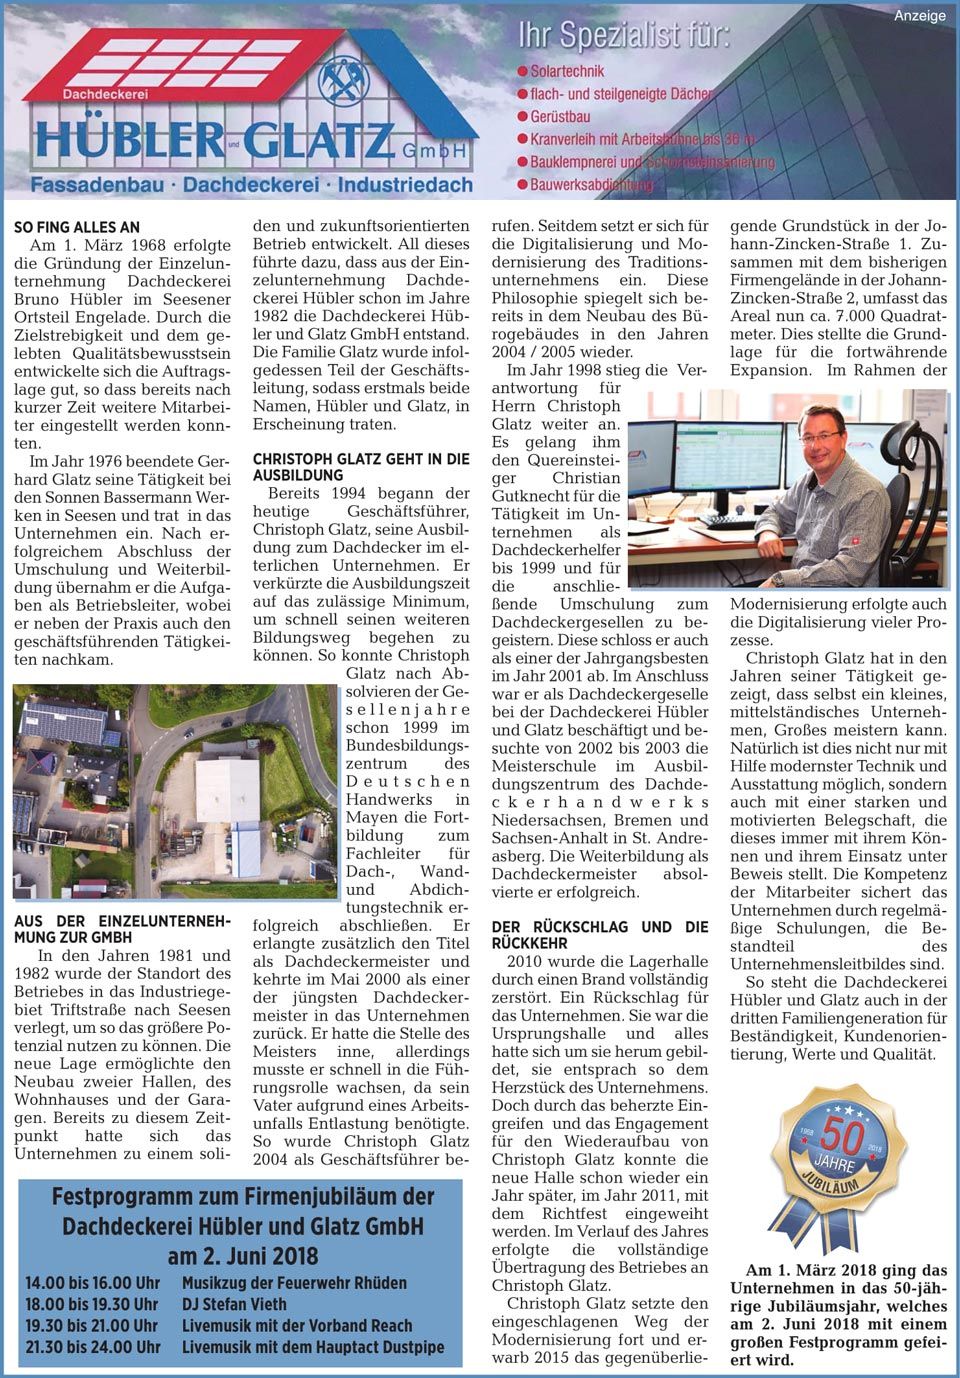 Zeitungsartikel zu Dachdeckerei Hübler und Glatz GmbH